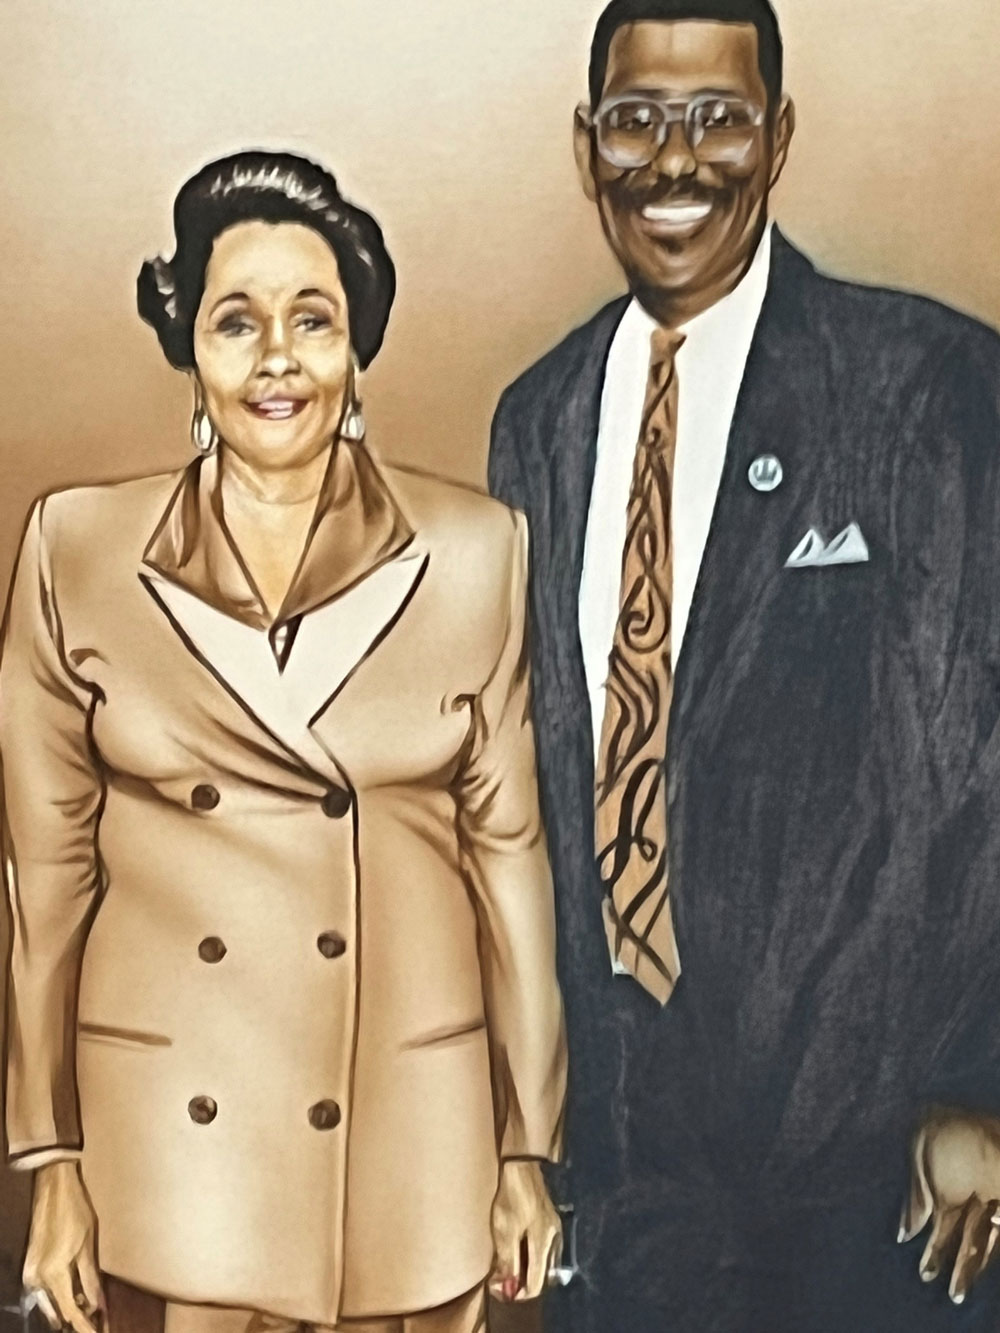 Dr. Caree Jackson-Cotwright's parents